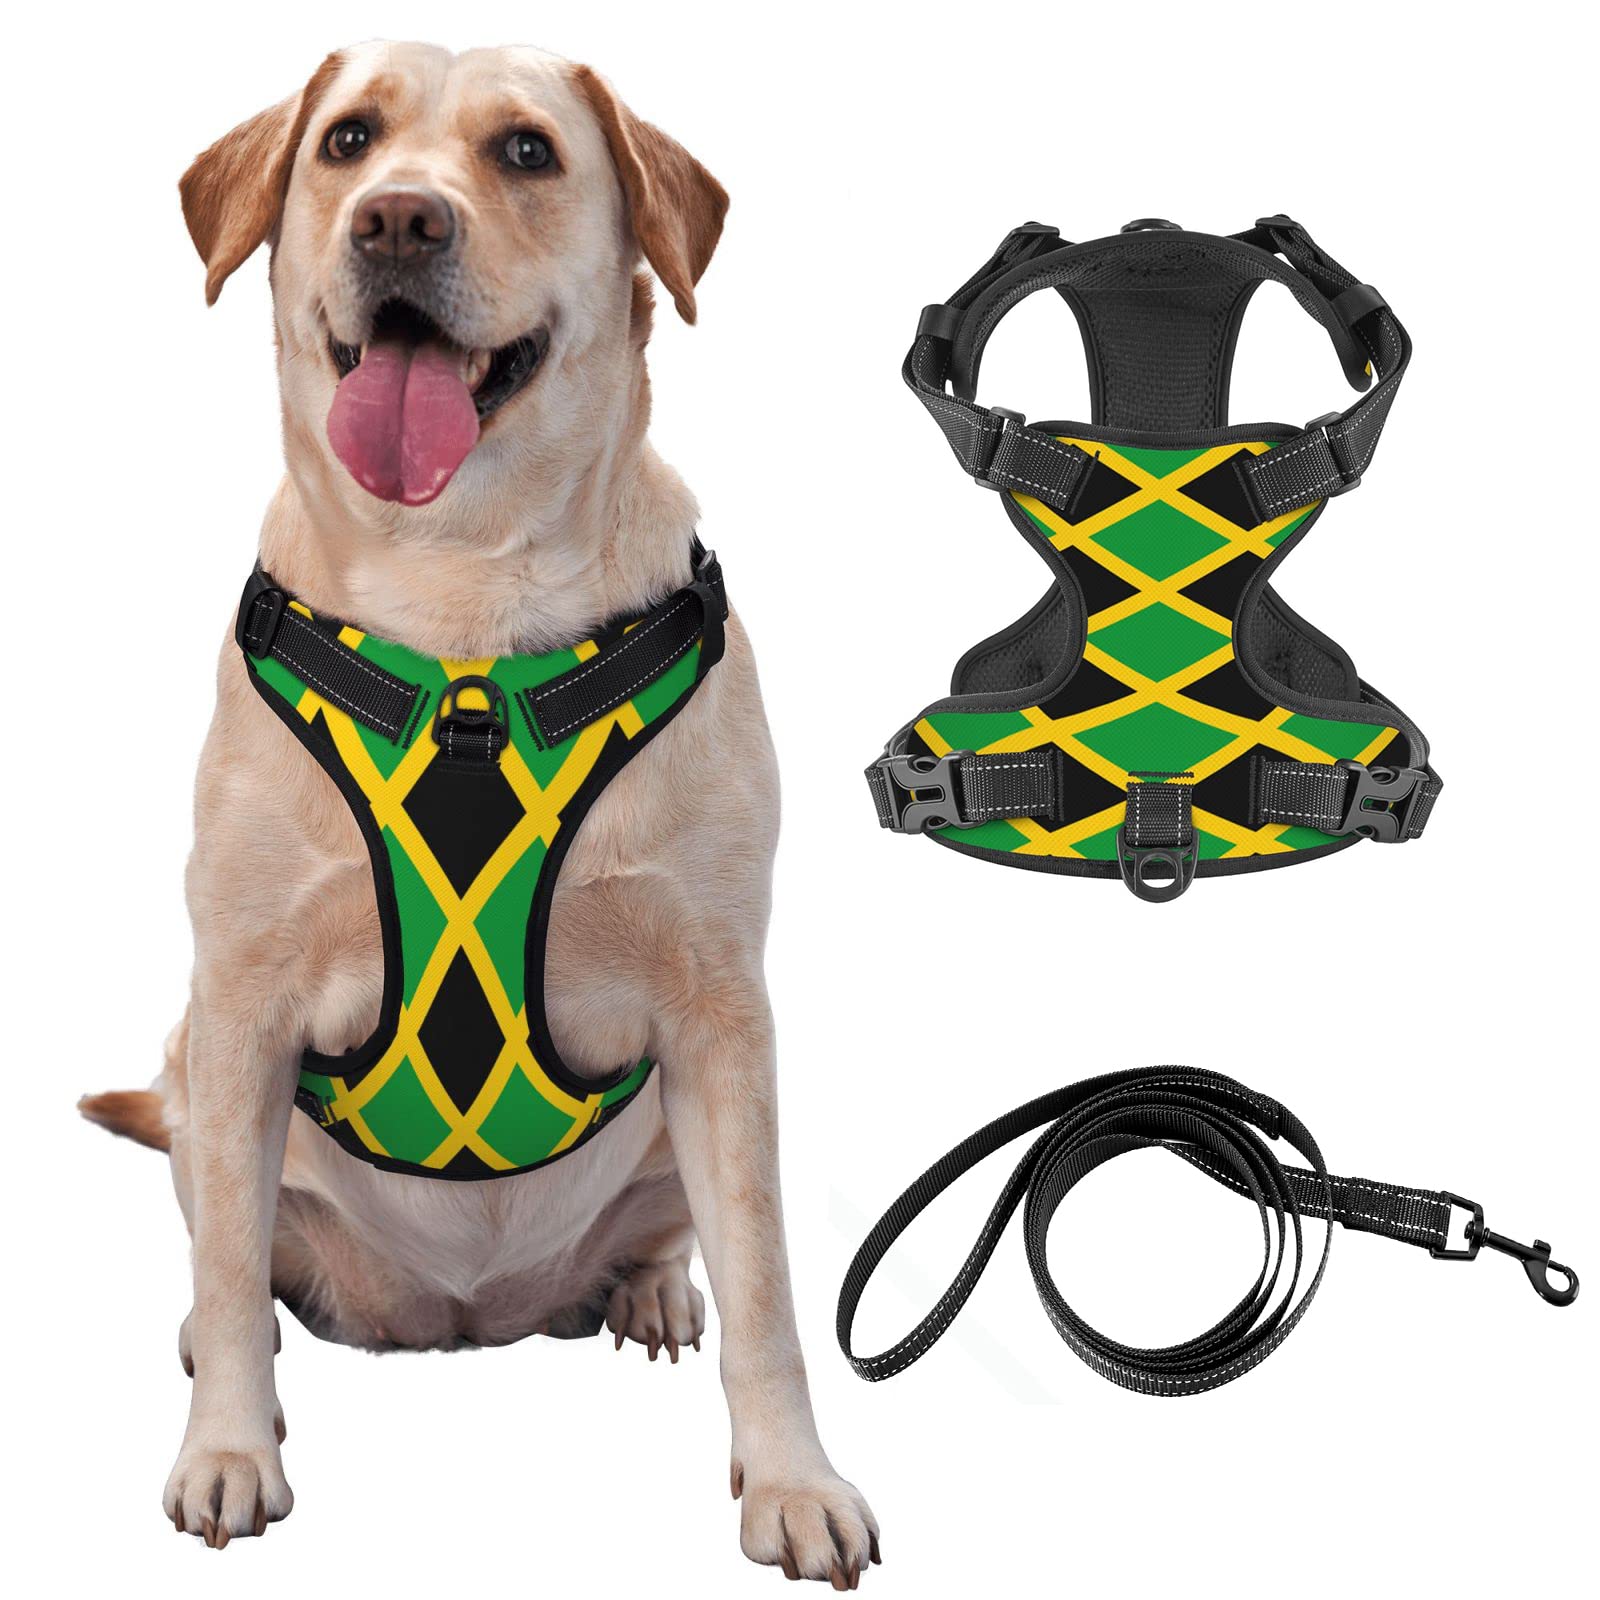 Hundegeschirr mit Jamaika-Flagge, kein Ziehen, reflektierendes und verstellbares Outdoor-Haustier-Oxford-Weste, mit Easy-On-Off-Technologie, für Training, Spazierengehen, kein Würgen.